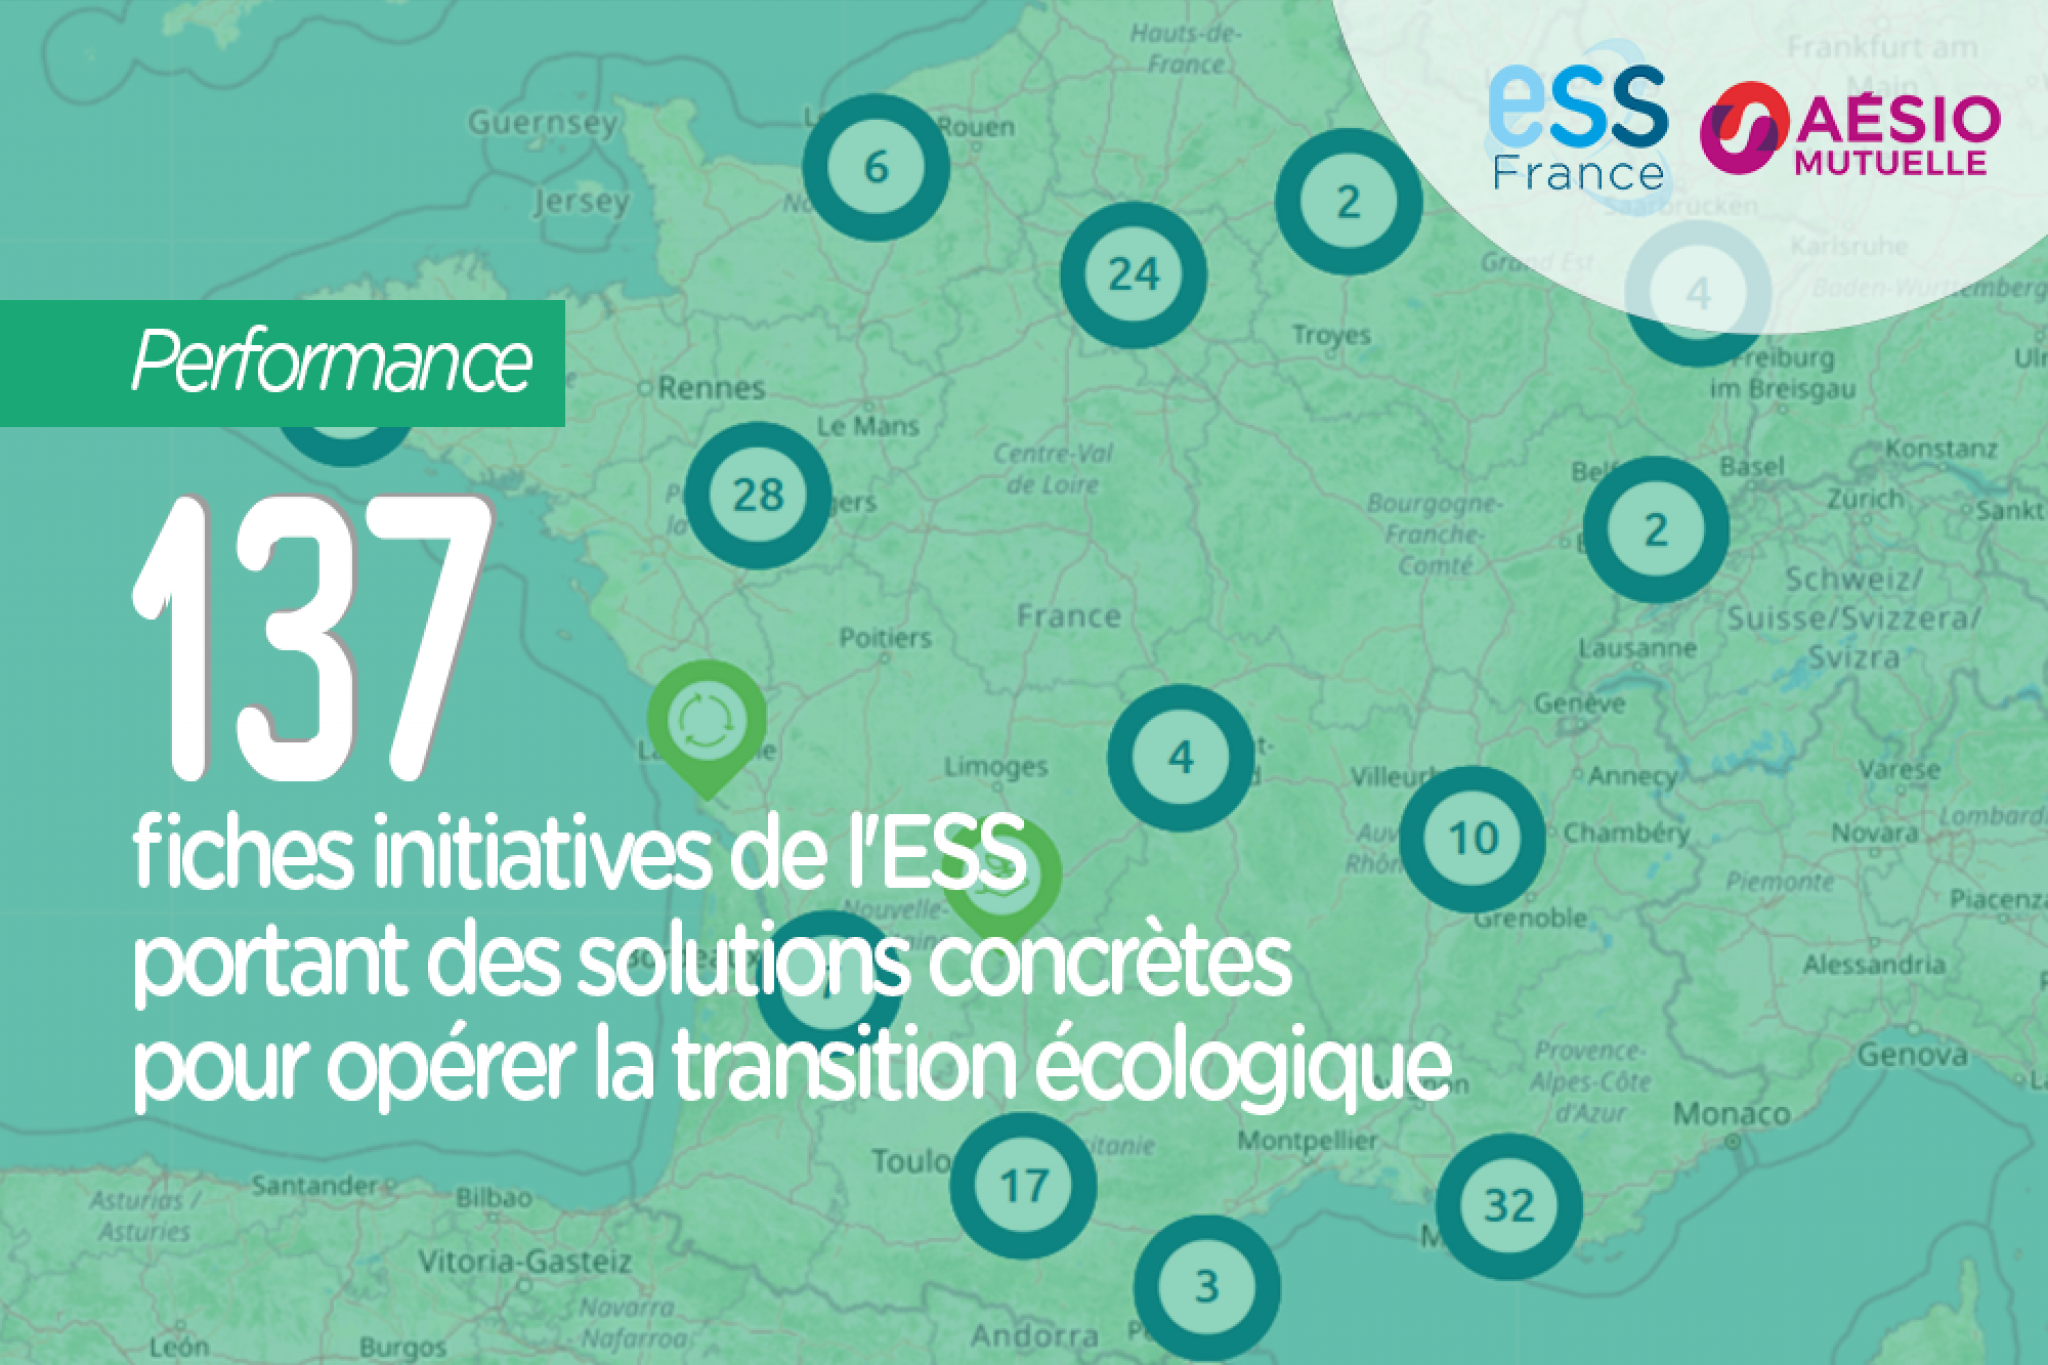 137 fiches initiatives de l'ESS portant des solutions concrètes pour opérer la transition écologique